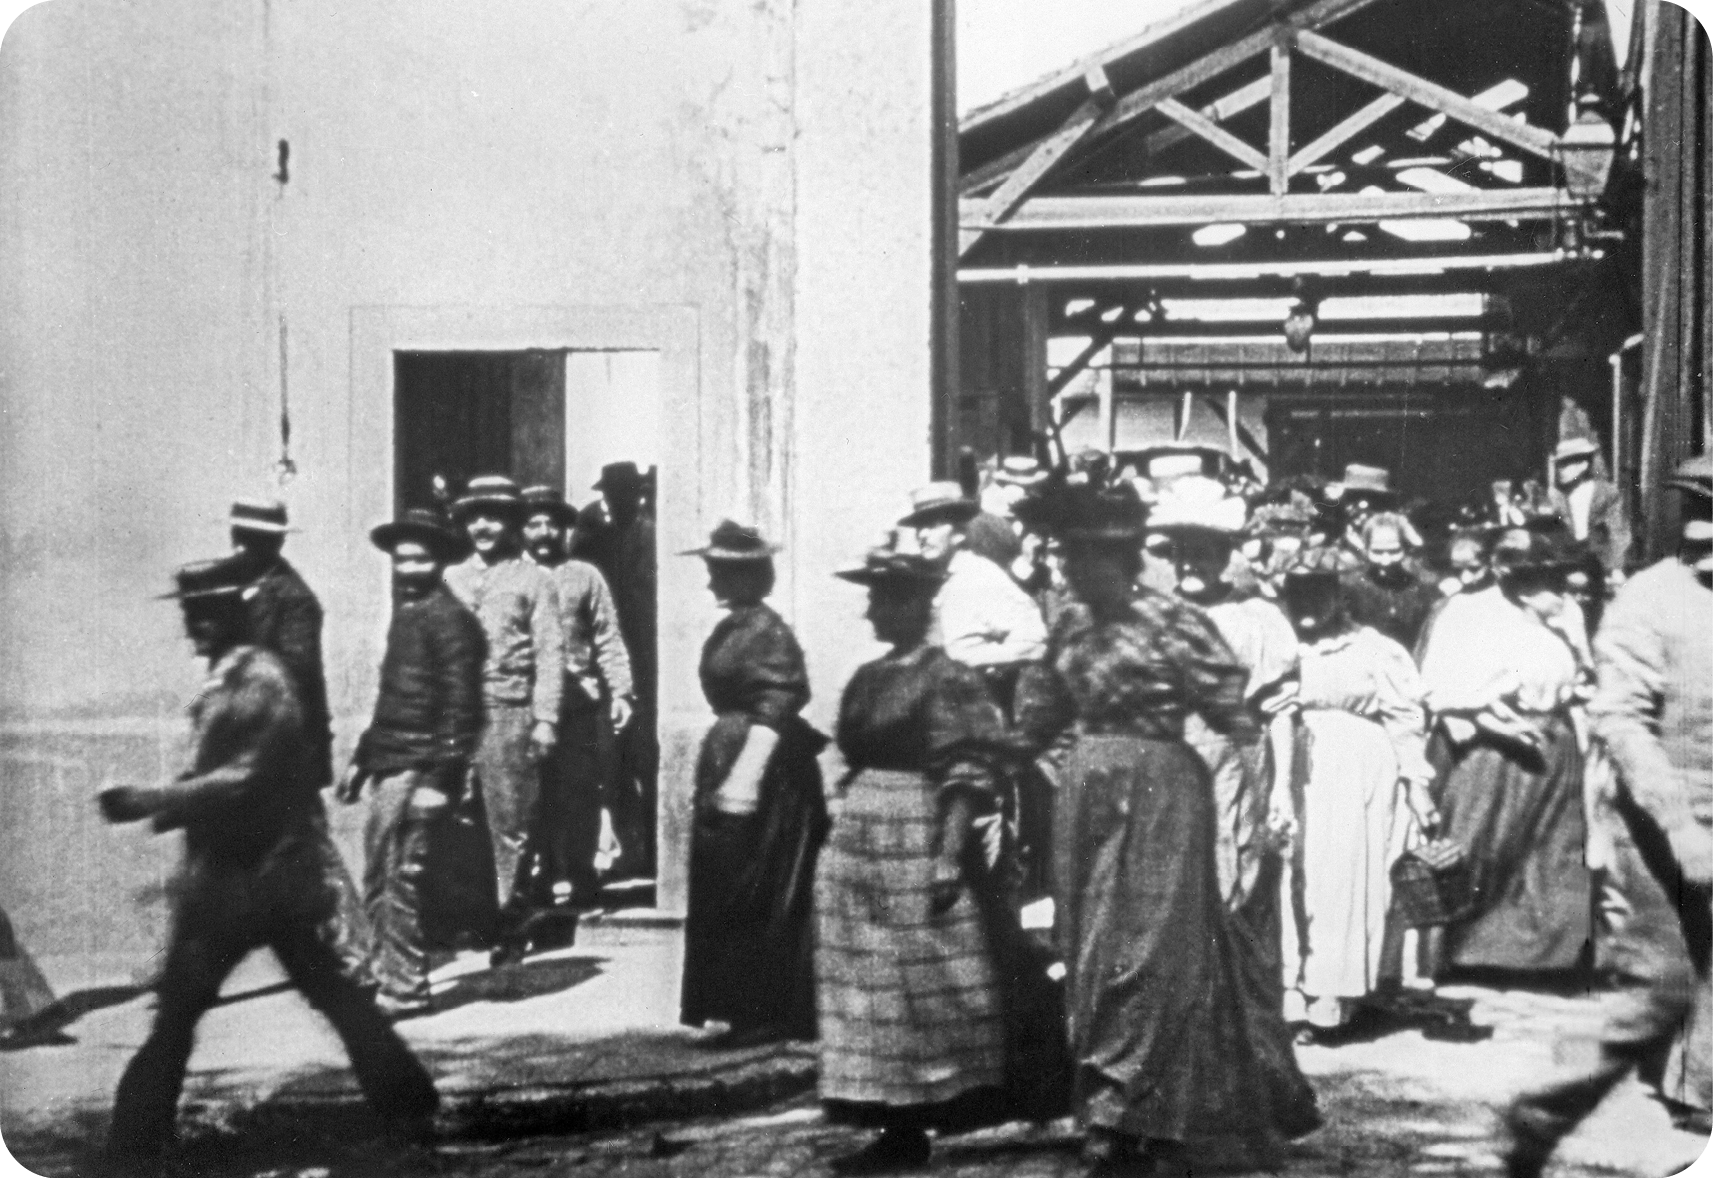 Fotografia em preto e branco. Vista de uma multidão de pessoas saindo por portas e galpões. Os homens usam chapéus redondos, camisa e calça; as mulheres usam chapéus finos, vestidos e saias. Ao fundo há uma grande construção de madeira.